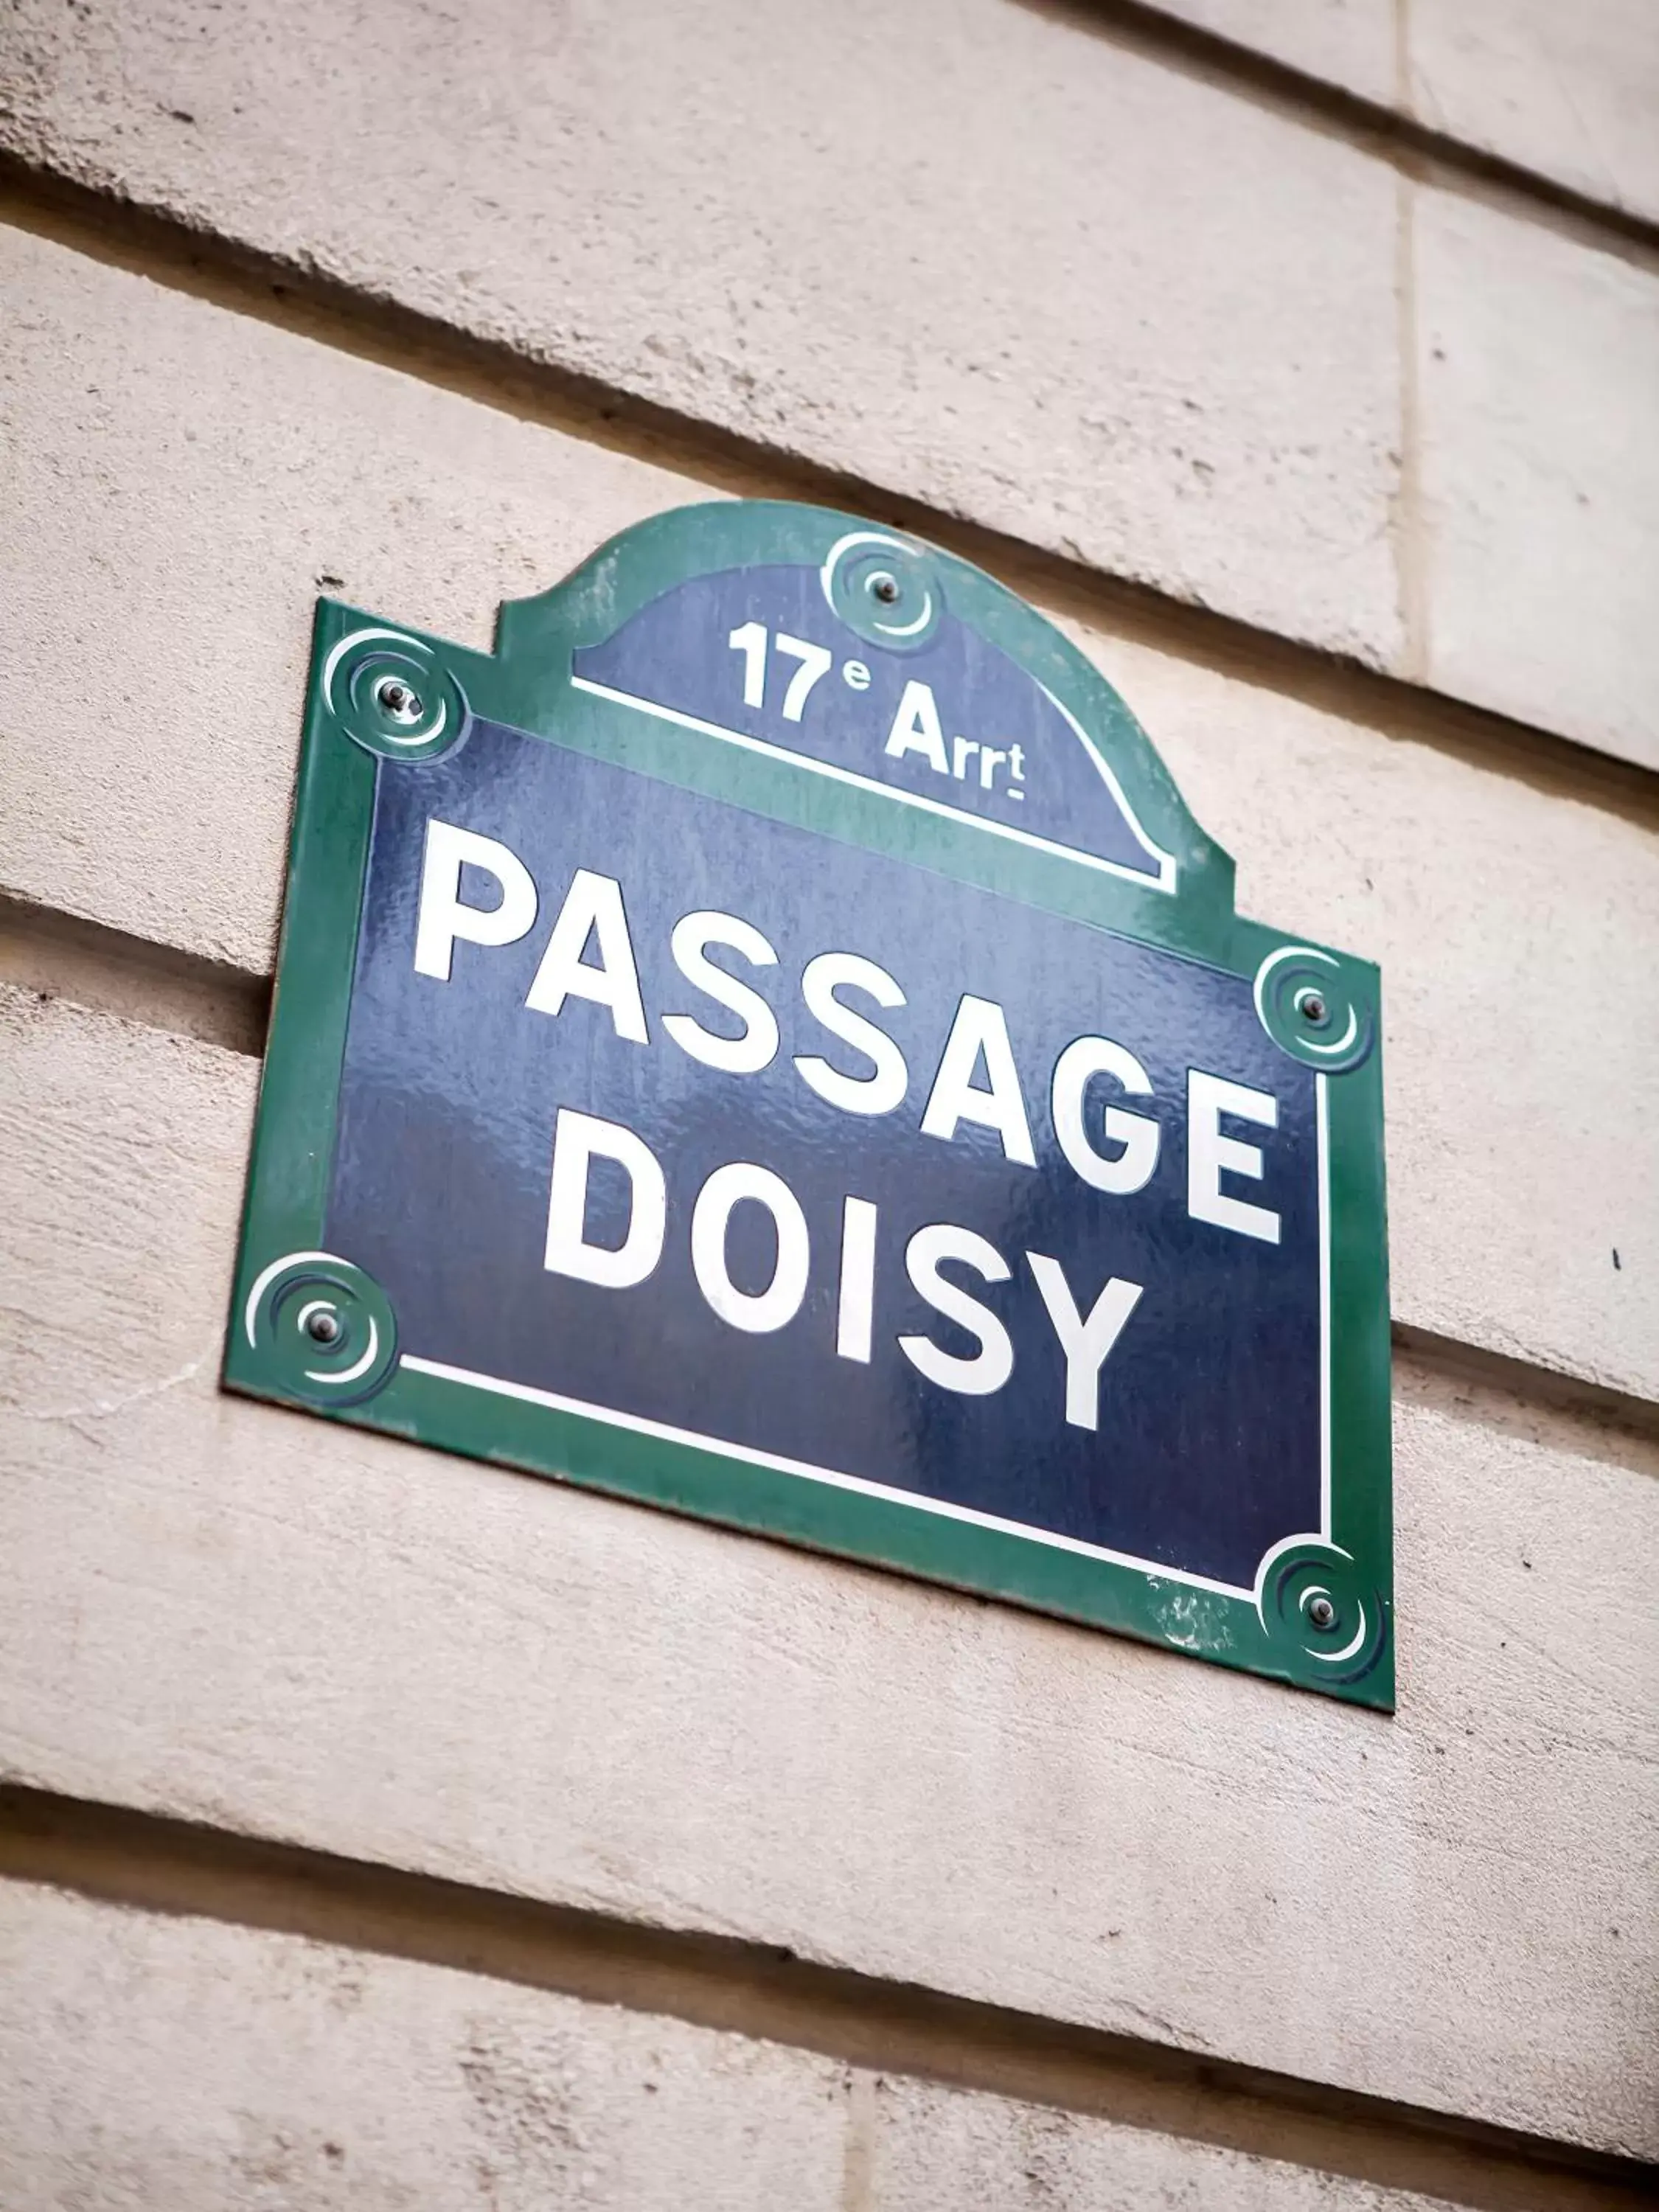 Neighbourhood in Doisy Etoile - Orso Hotels